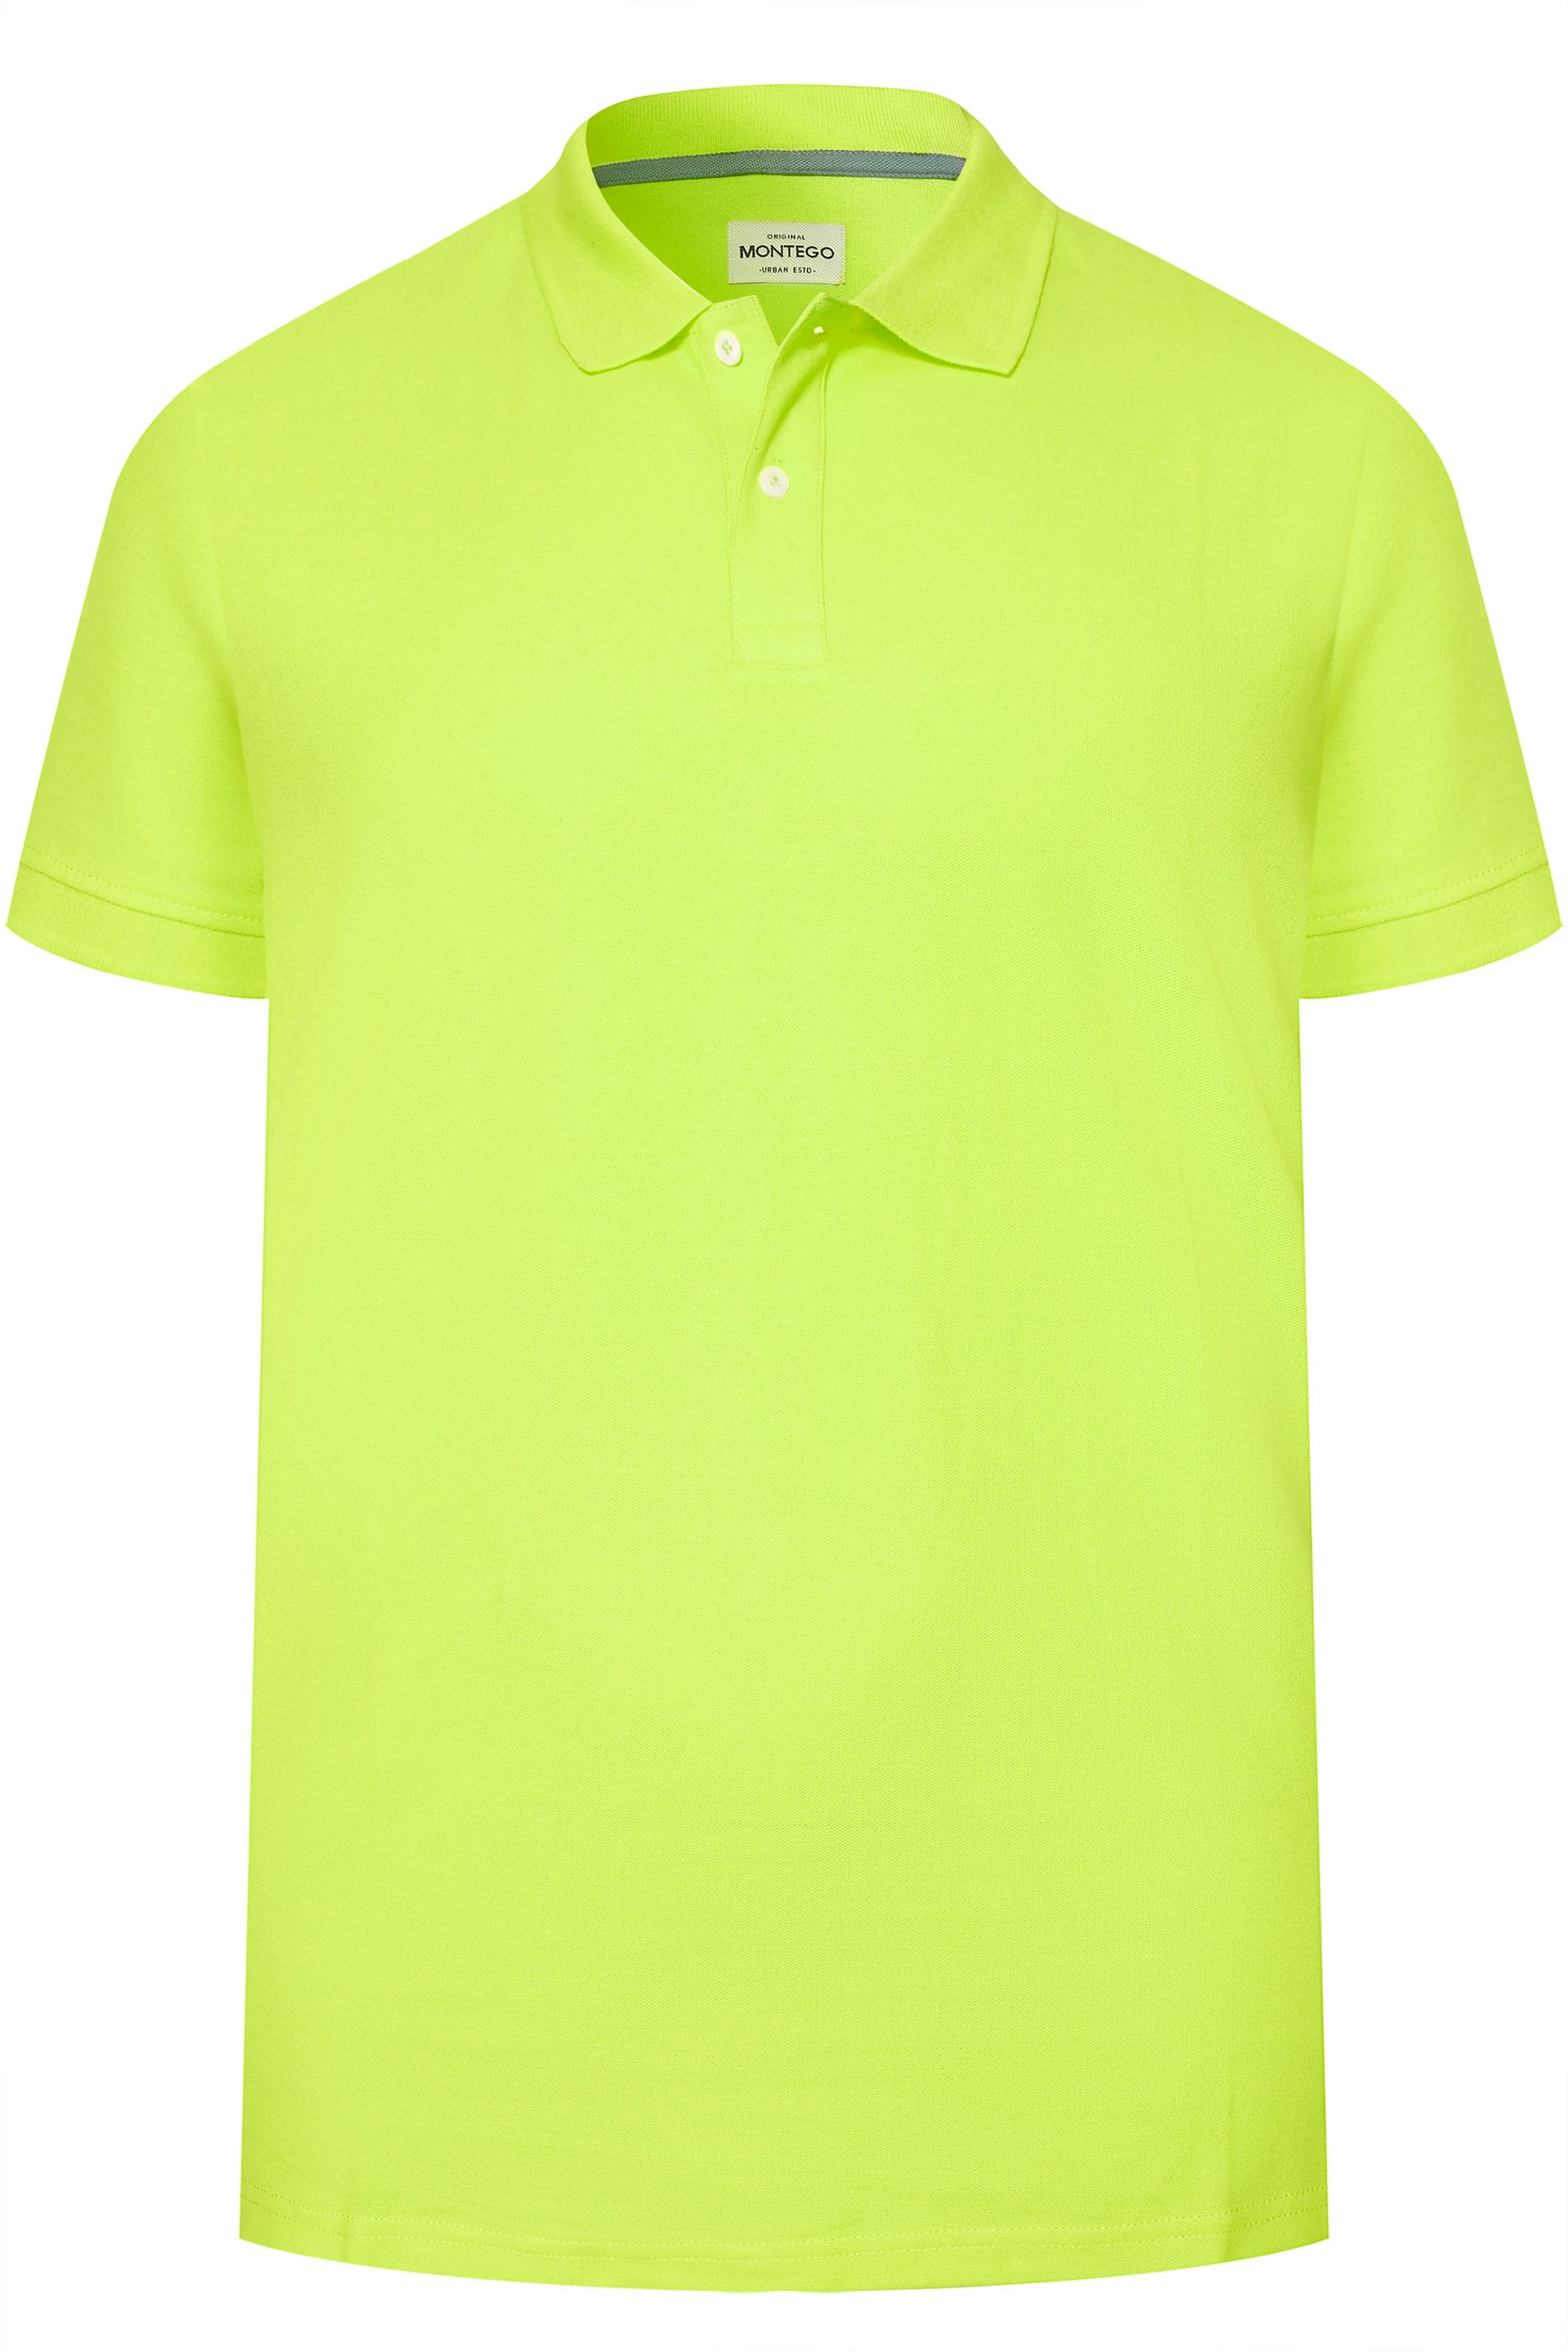 MONTEGO Lime Green Polo Shirt | Sizes Medium - 8XL | BadRhino